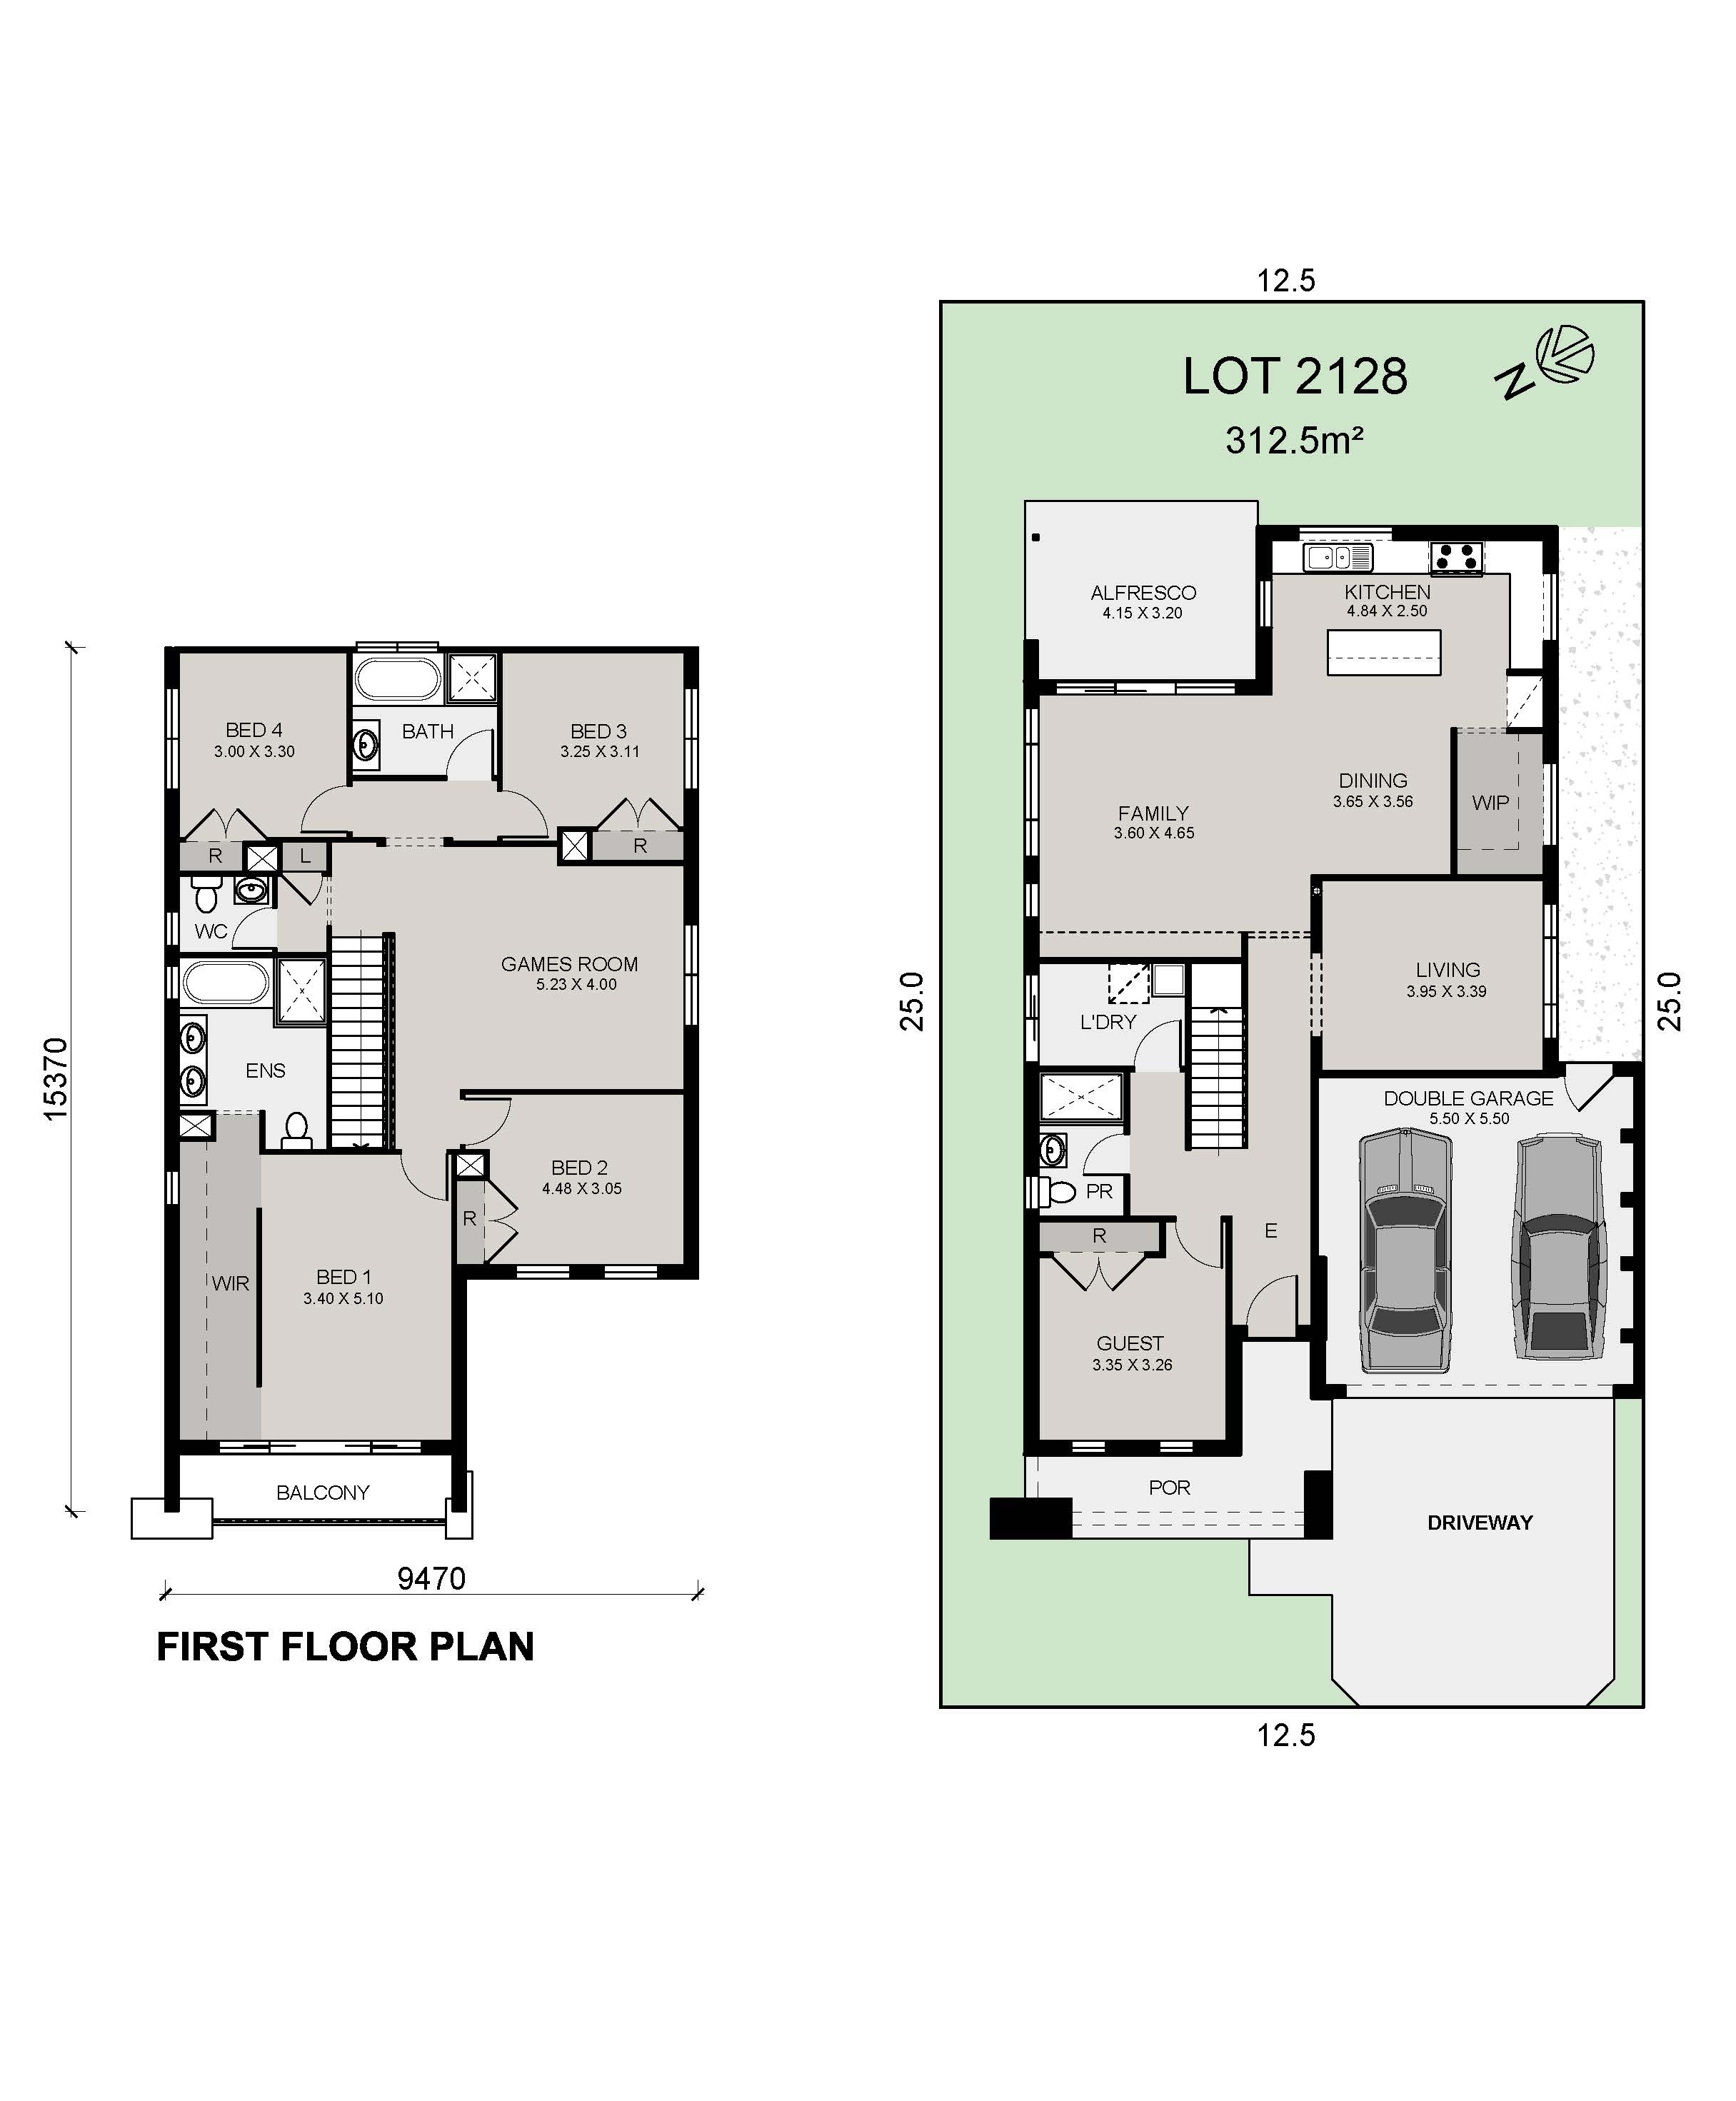 Lot 2128 Forsyth 30 25m RK Guest Suite Option Fairview Coloured Plan2